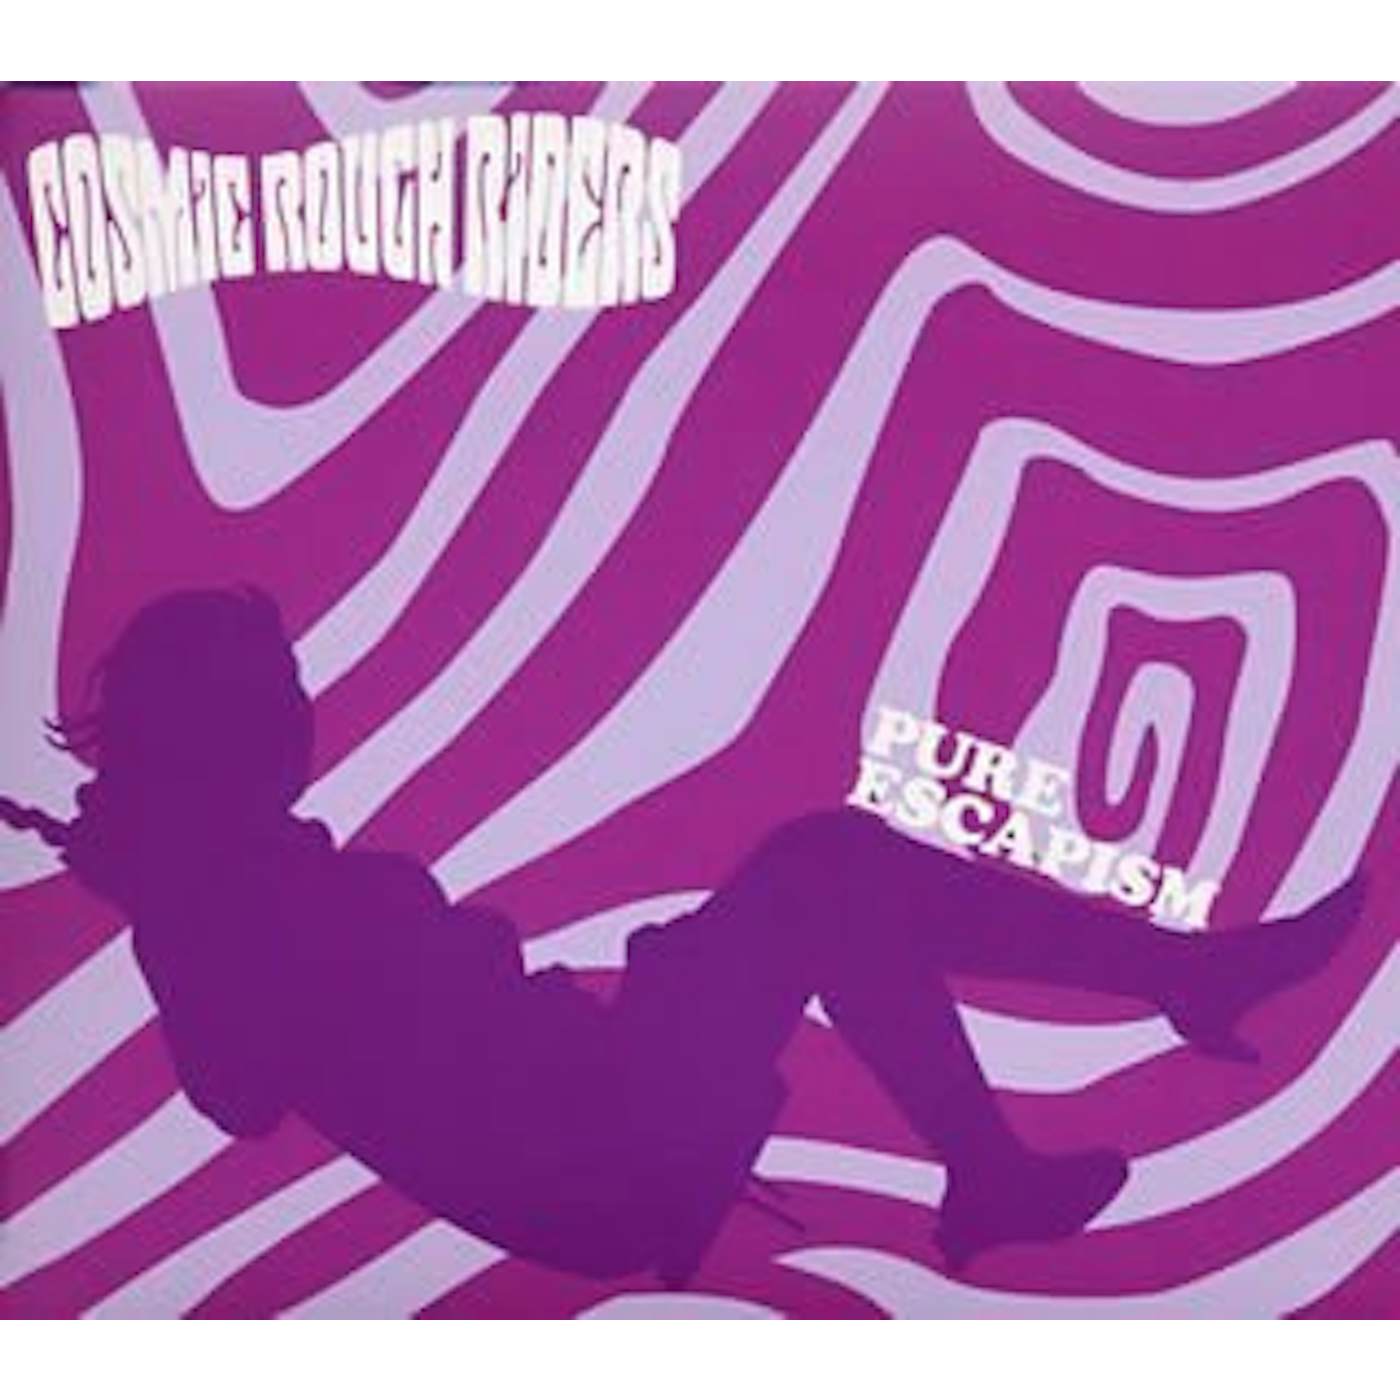 Cosmic Rough Riders PURE ESCAPISM CD